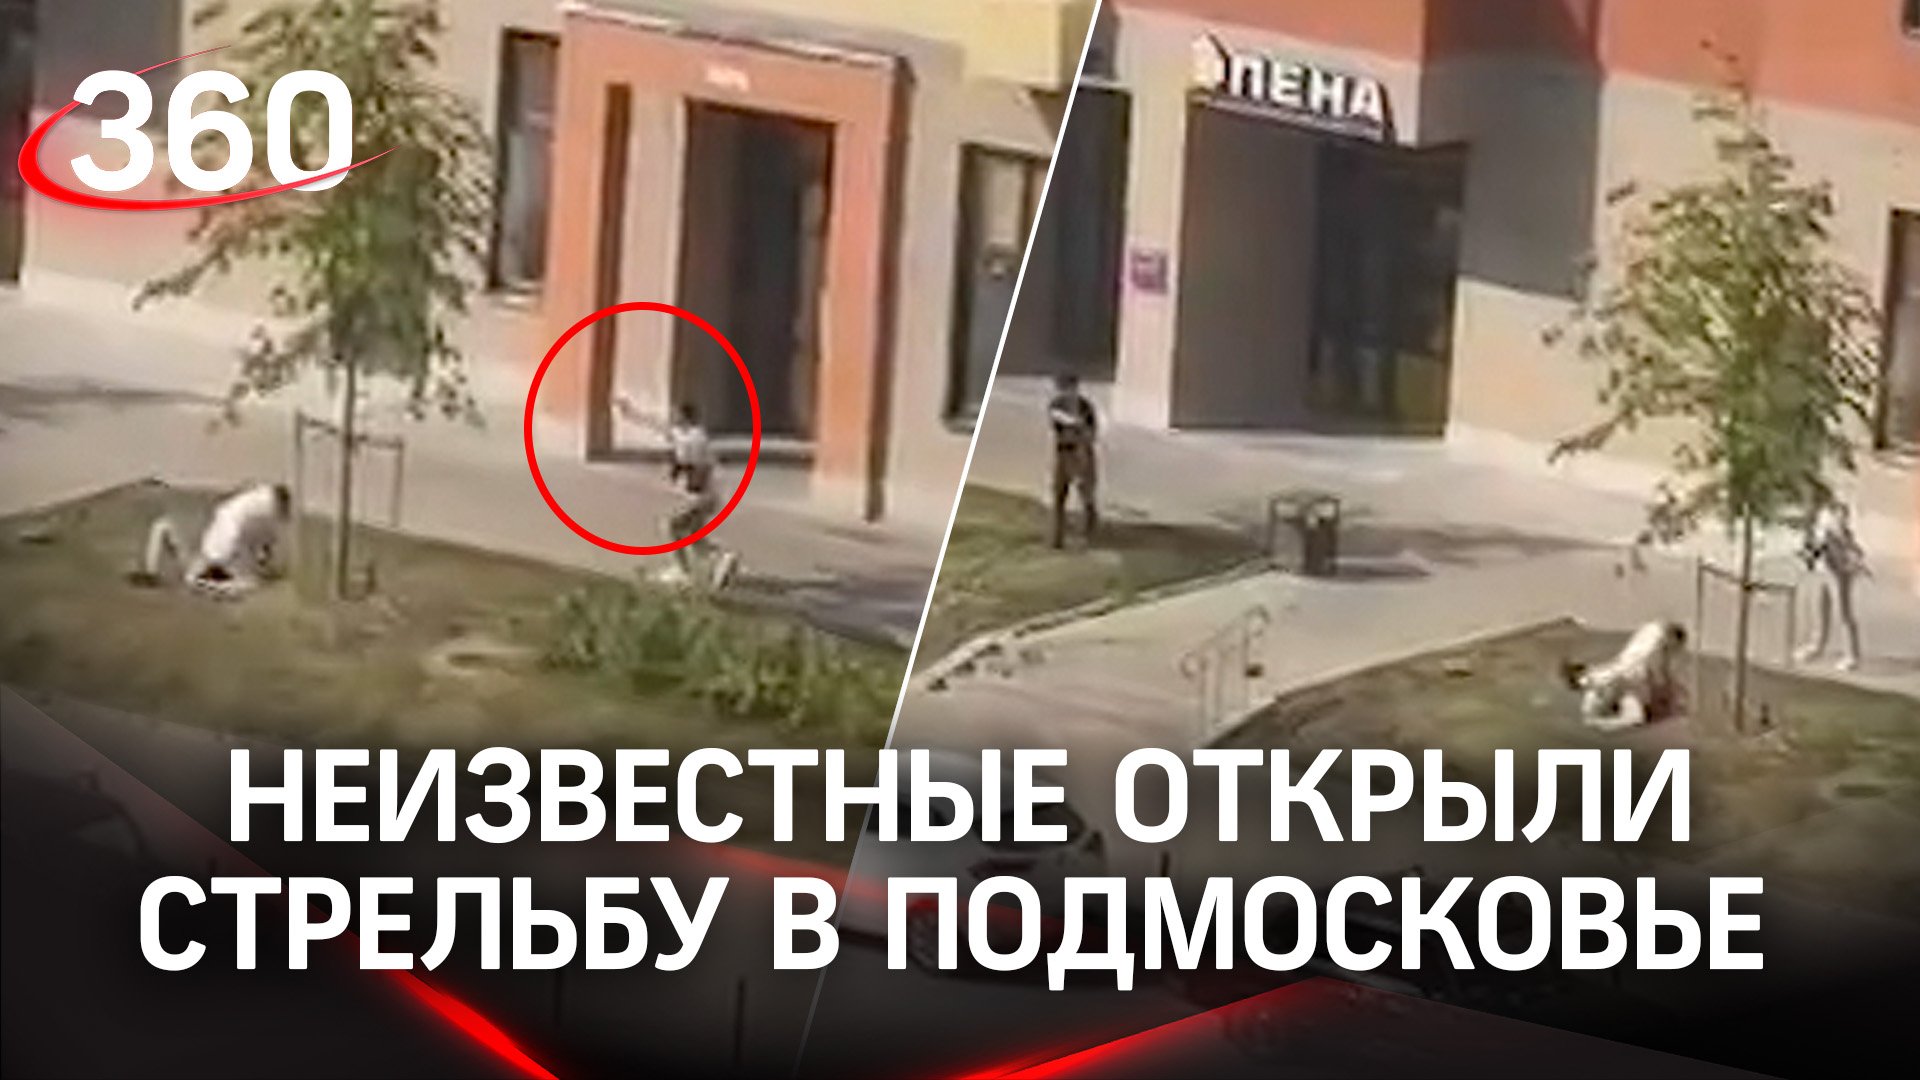 Неизвестные открыли стрельбу в Подмосковье - во дворе жилого комплекса гуляли матери с детьми